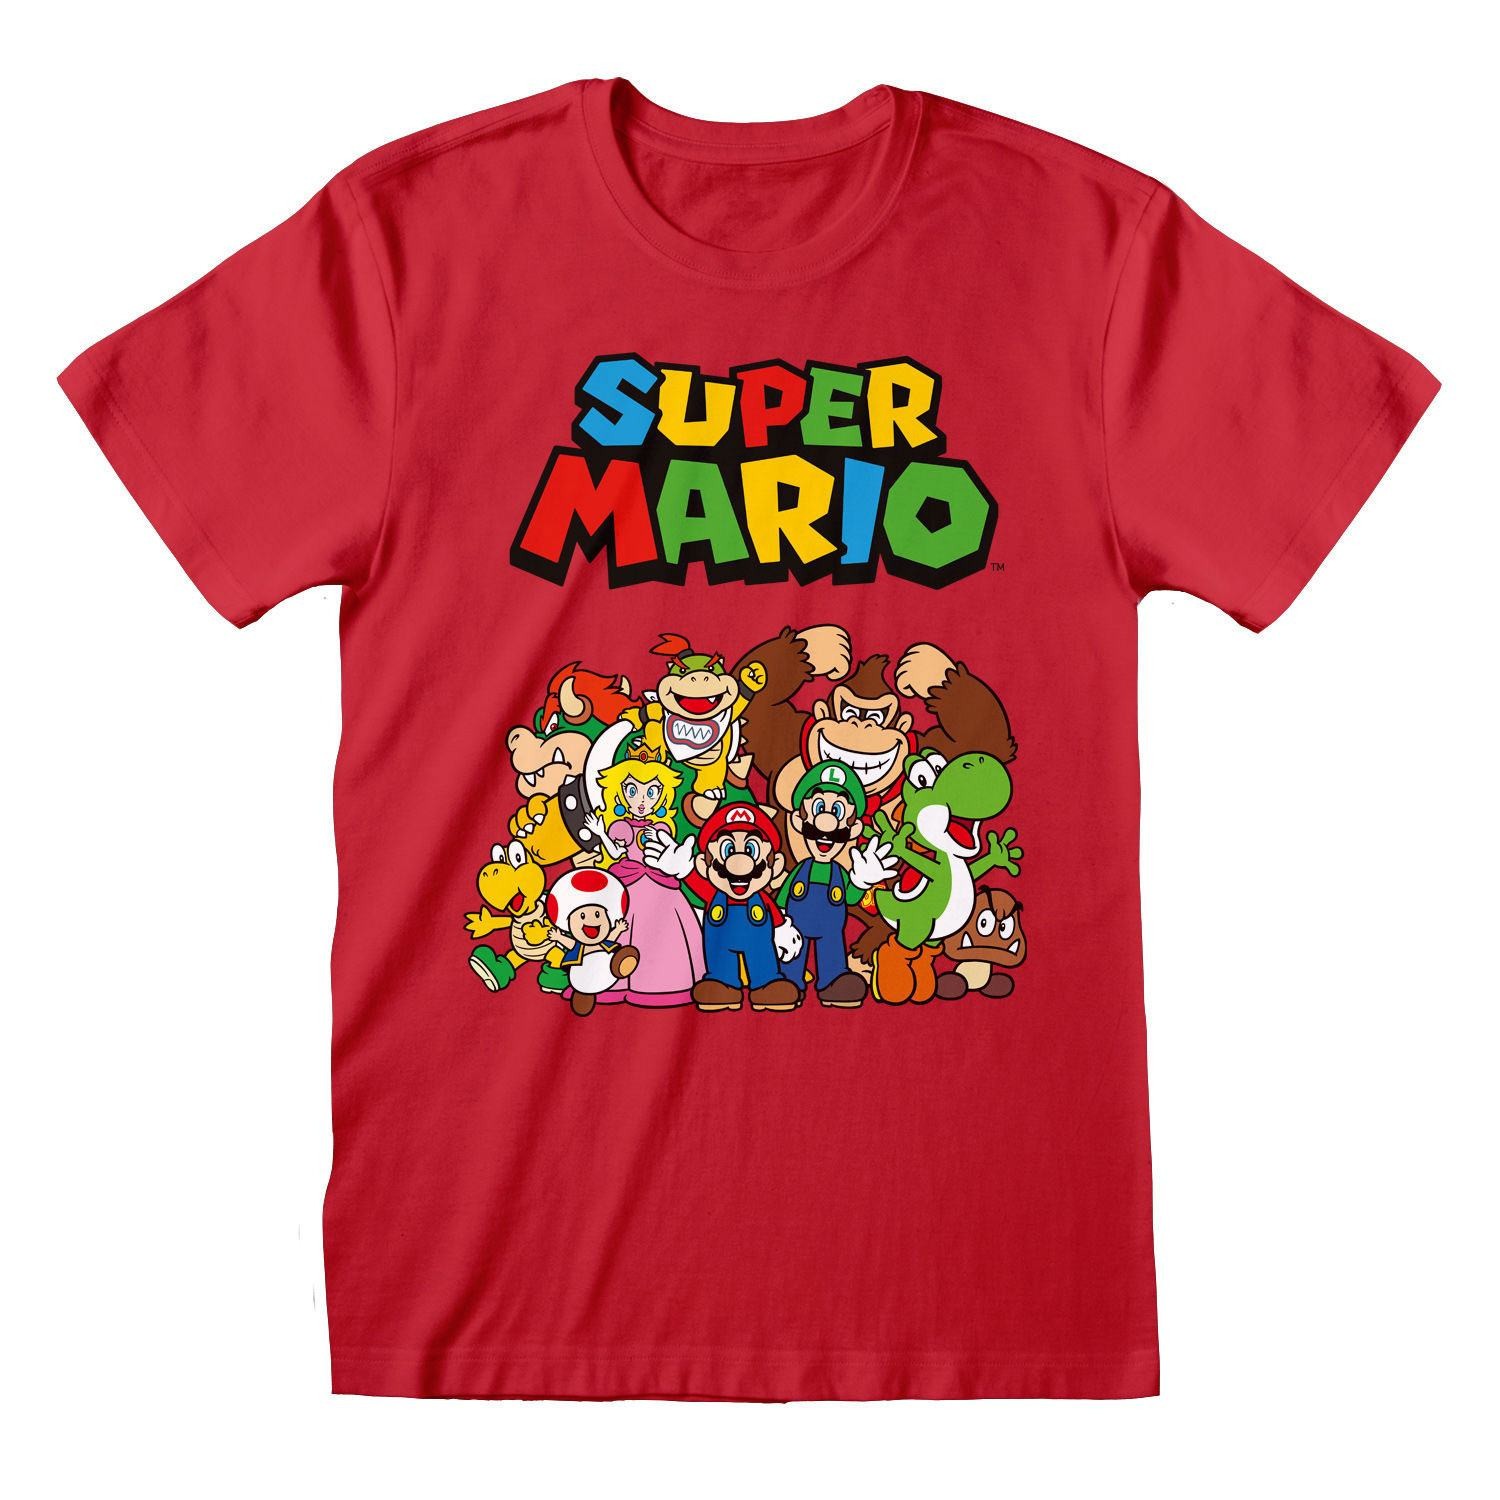  Heroes Inc Super Mario T-Shirt Main Character Group- - T-shirts